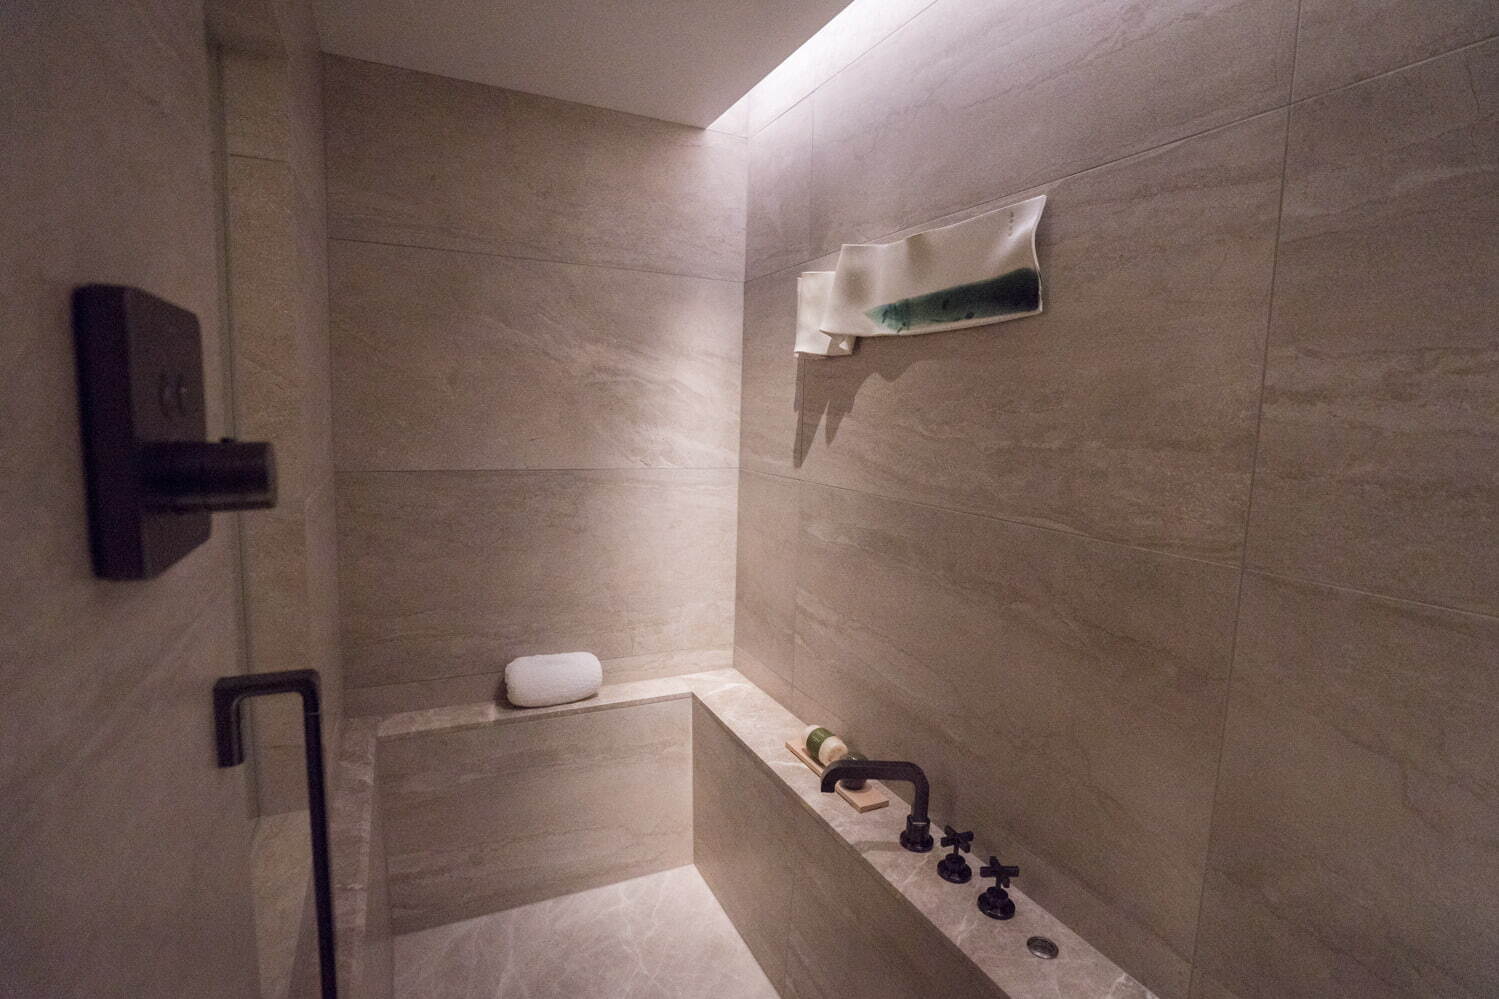 〈バスルーム〉バスタブは高級感溢れる石造り。シャワーはハンドシャワーとレインシャワーが揃う。日本人調香師がフレグランスを手掛けたバスアメニティは、京都の自然から着想を得た爽やかな香り。